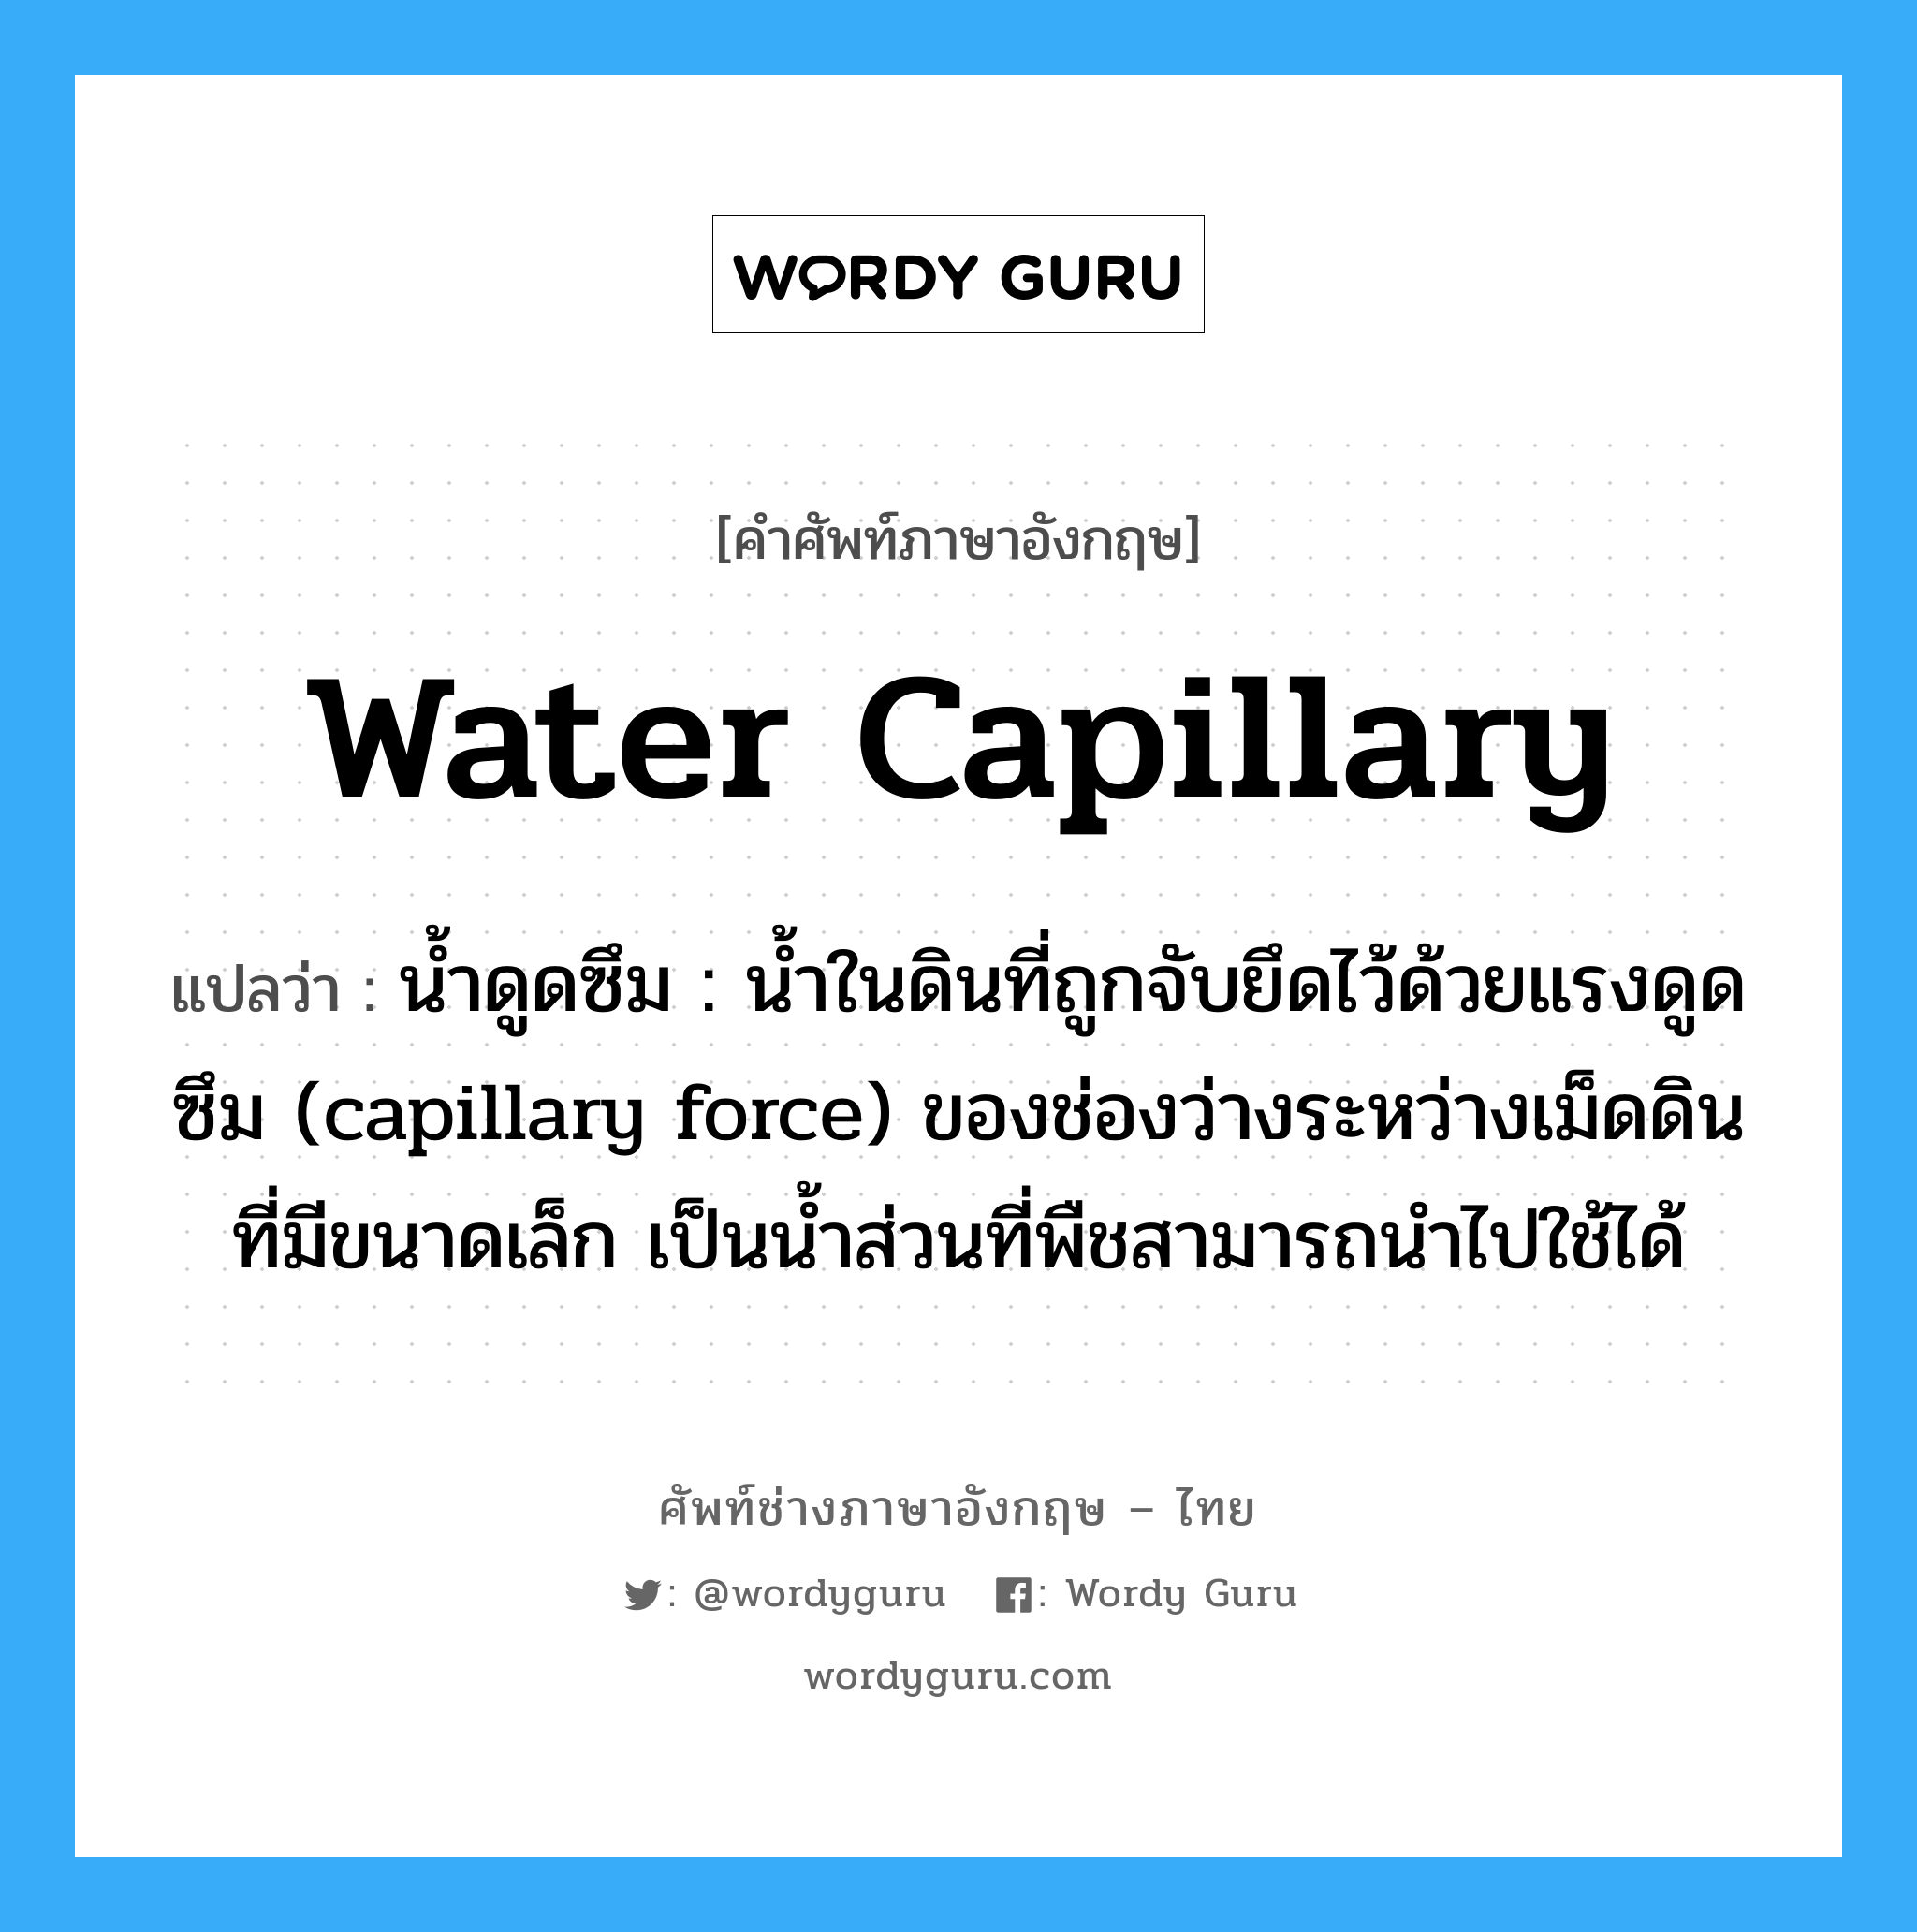 water capillary แปลว่า?, คำศัพท์ช่างภาษาอังกฤษ - ไทย water capillary คำศัพท์ภาษาอังกฤษ water capillary แปลว่า น้ำดูดซึม : น้ำในดินที่ถูกจับยึดไว้ด้วยแรงดูดซึม (capillary force) ของช่องว่างระหว่างเม็ดดินที่มีขนาดเล็ก เป็นน้ำส่วนที่พืชสามารถนำไปใช้ได้